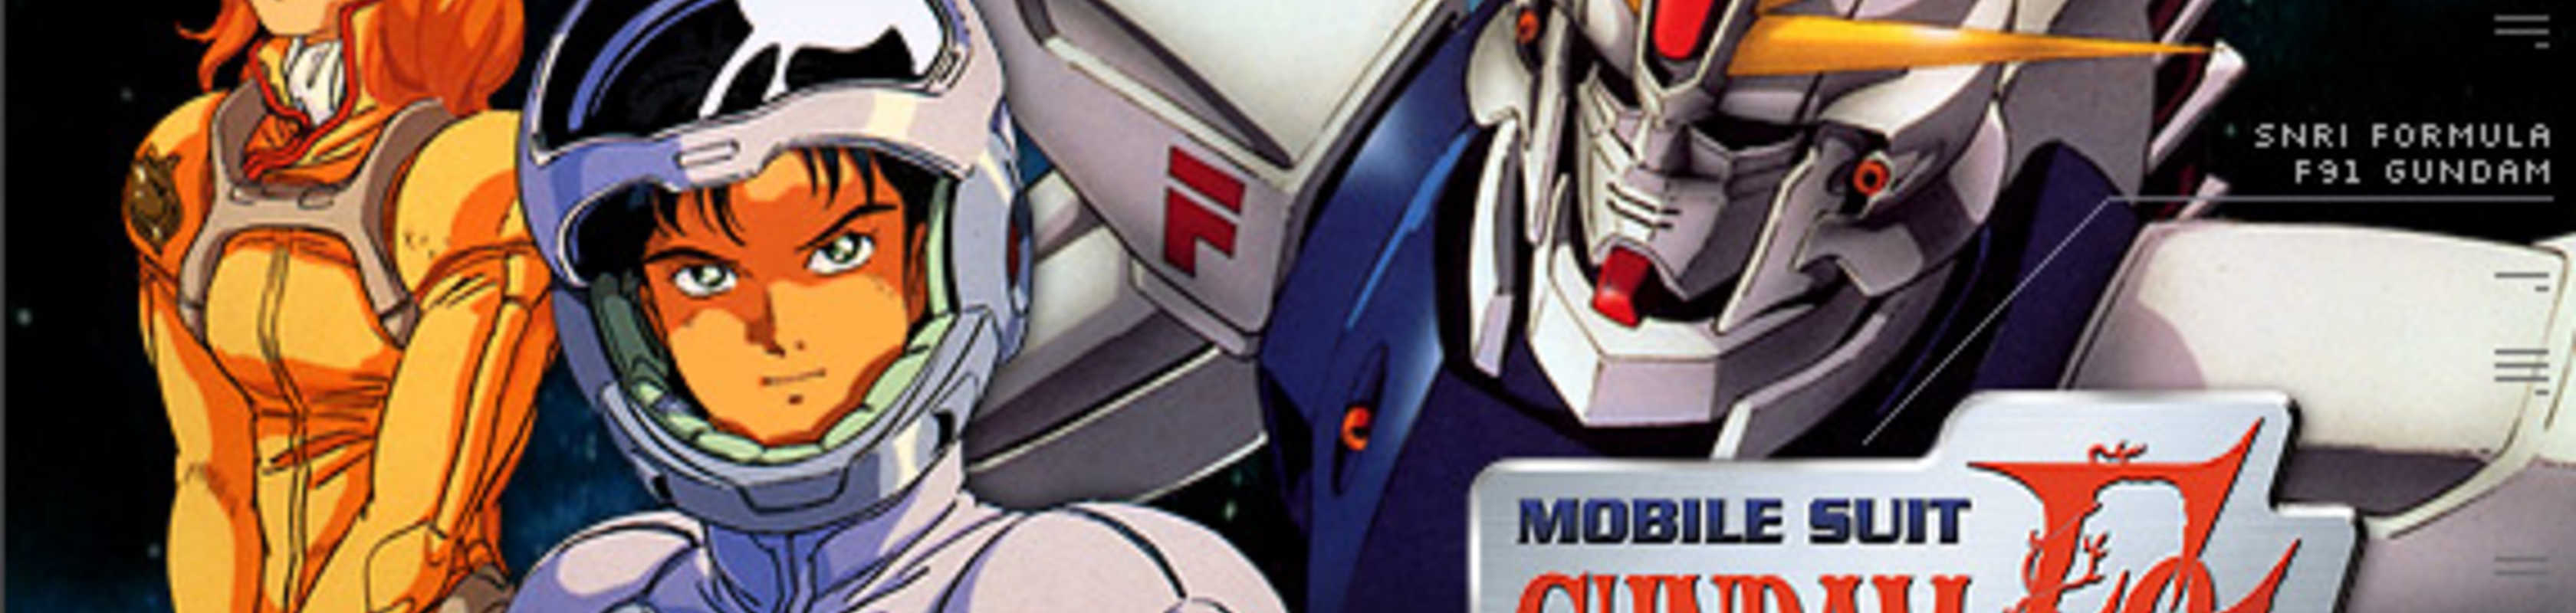 Mobile Suit Gundam F91 cover